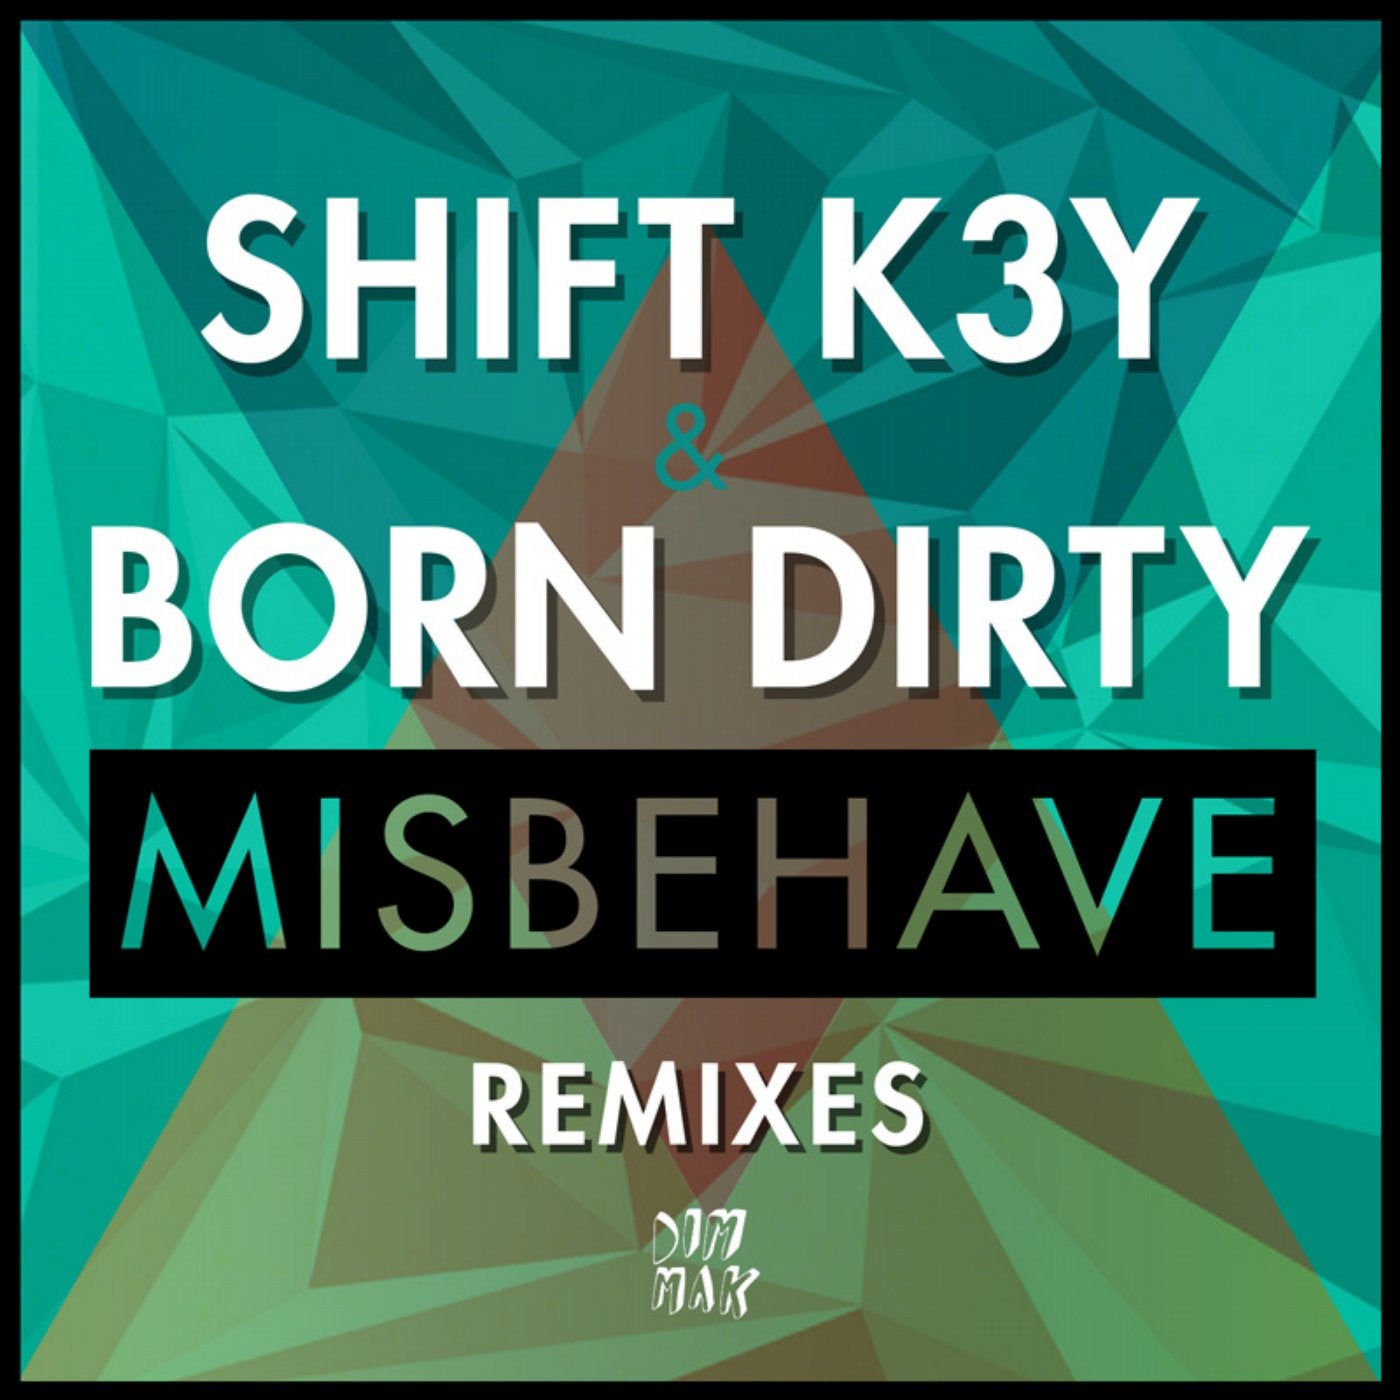 Misbehave Remixes